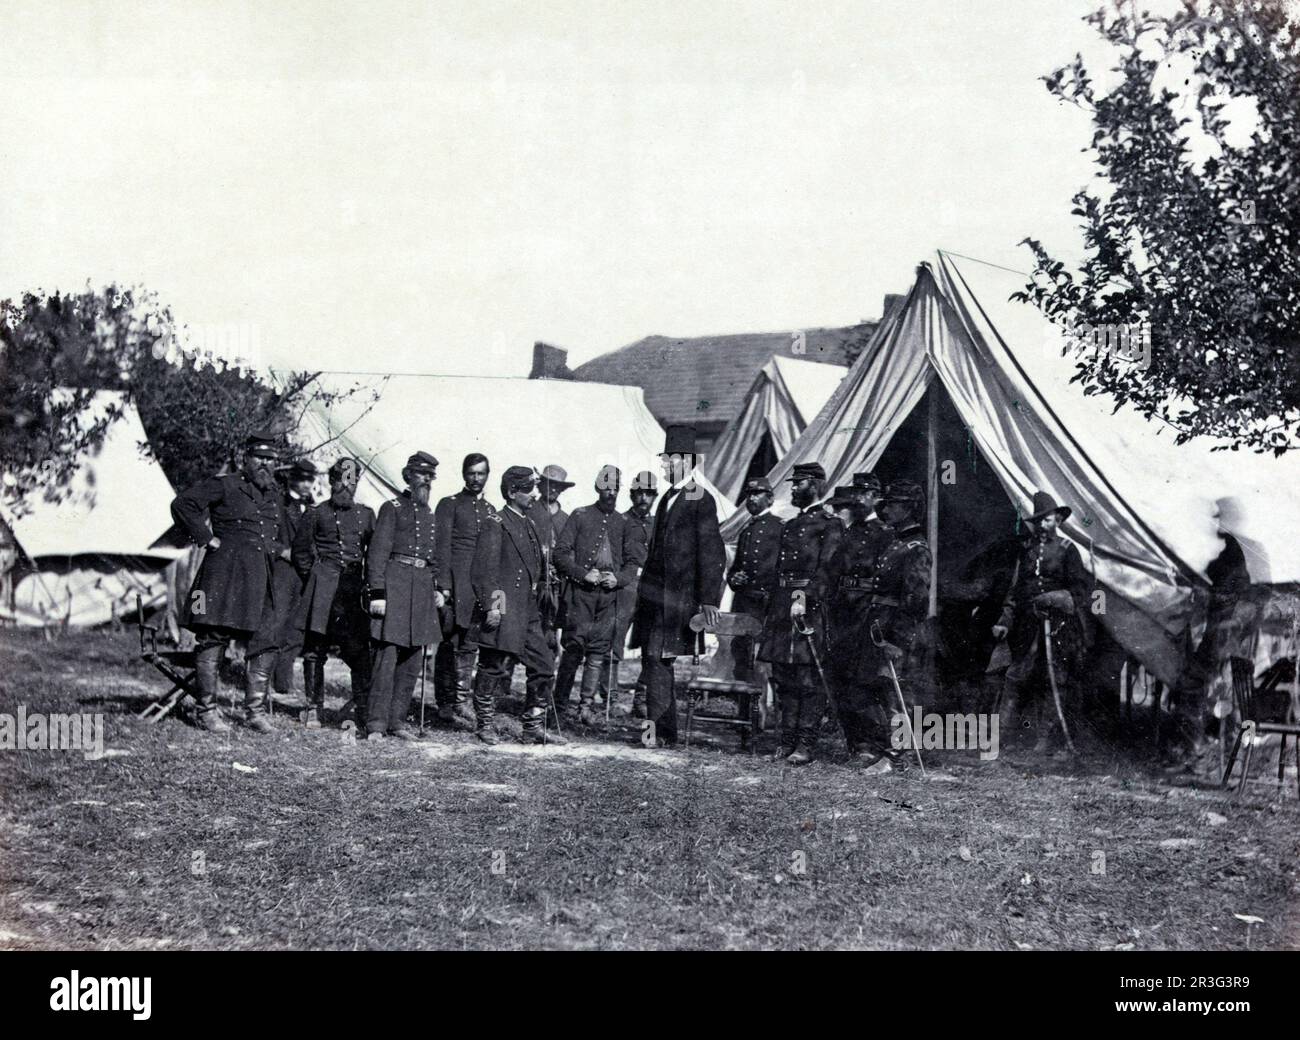 Le président Lincoln rend visite au général McClellan et à d'autres officiers de l'Armée de l'Union, Antietam, Maryland, 1862. Banque D'Images